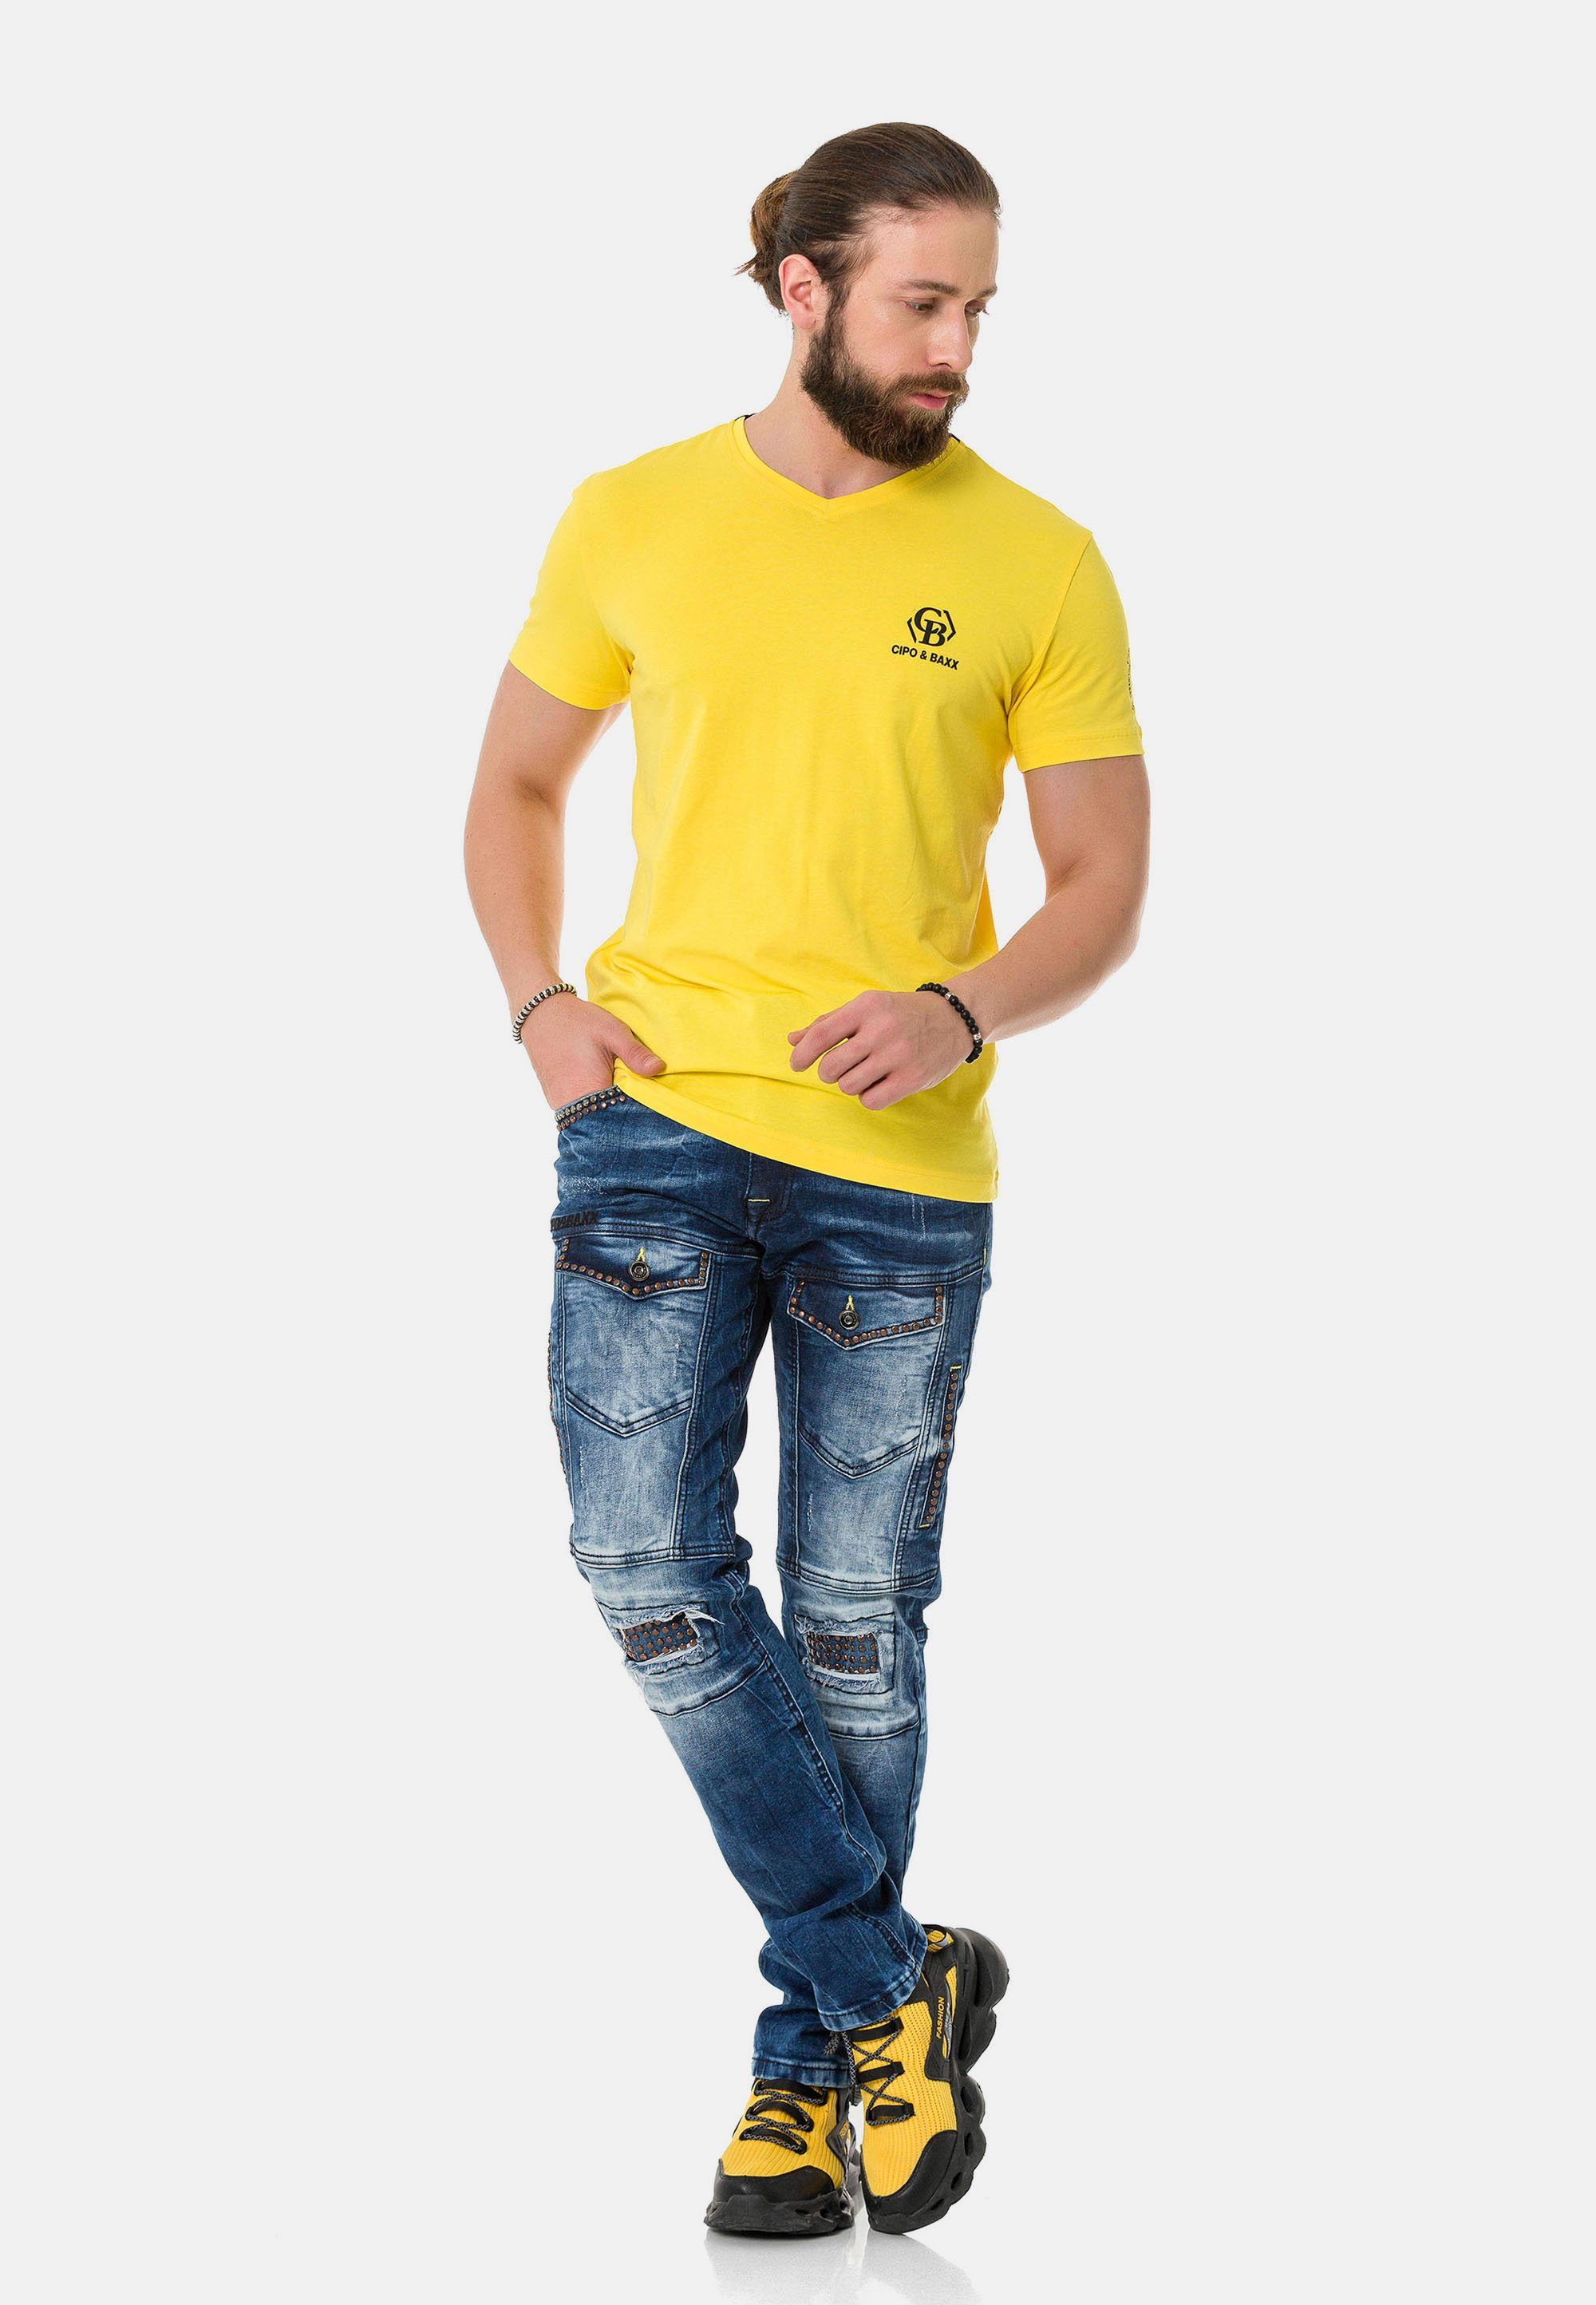 & mit Baxx Cipo T-Shirt Markenlogos dezenten gelb